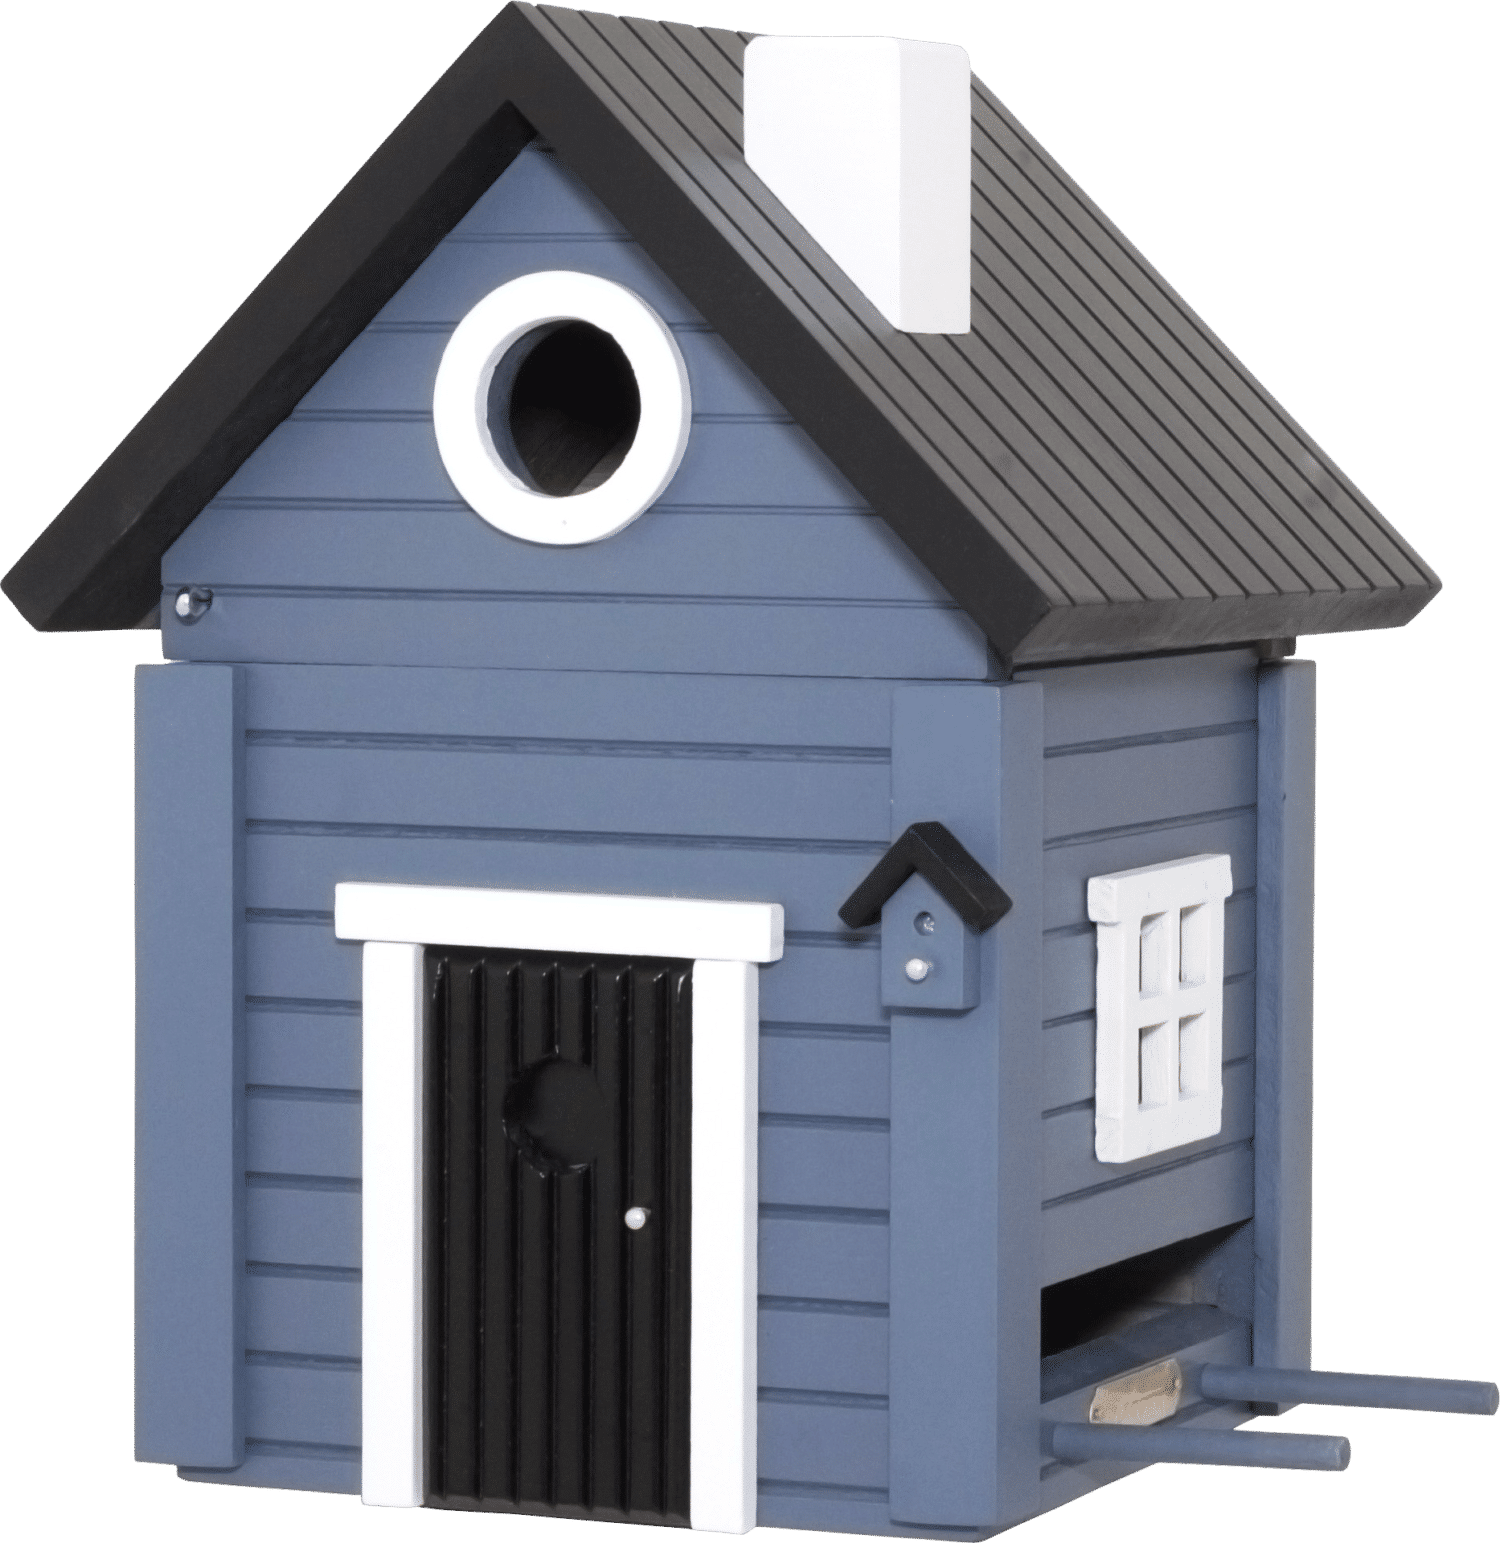 WILDLIFE GARDEN - Futtertisch & Vogelnistkasten Blaues Haus - Nistkasten aus Holz für Kleinvögel